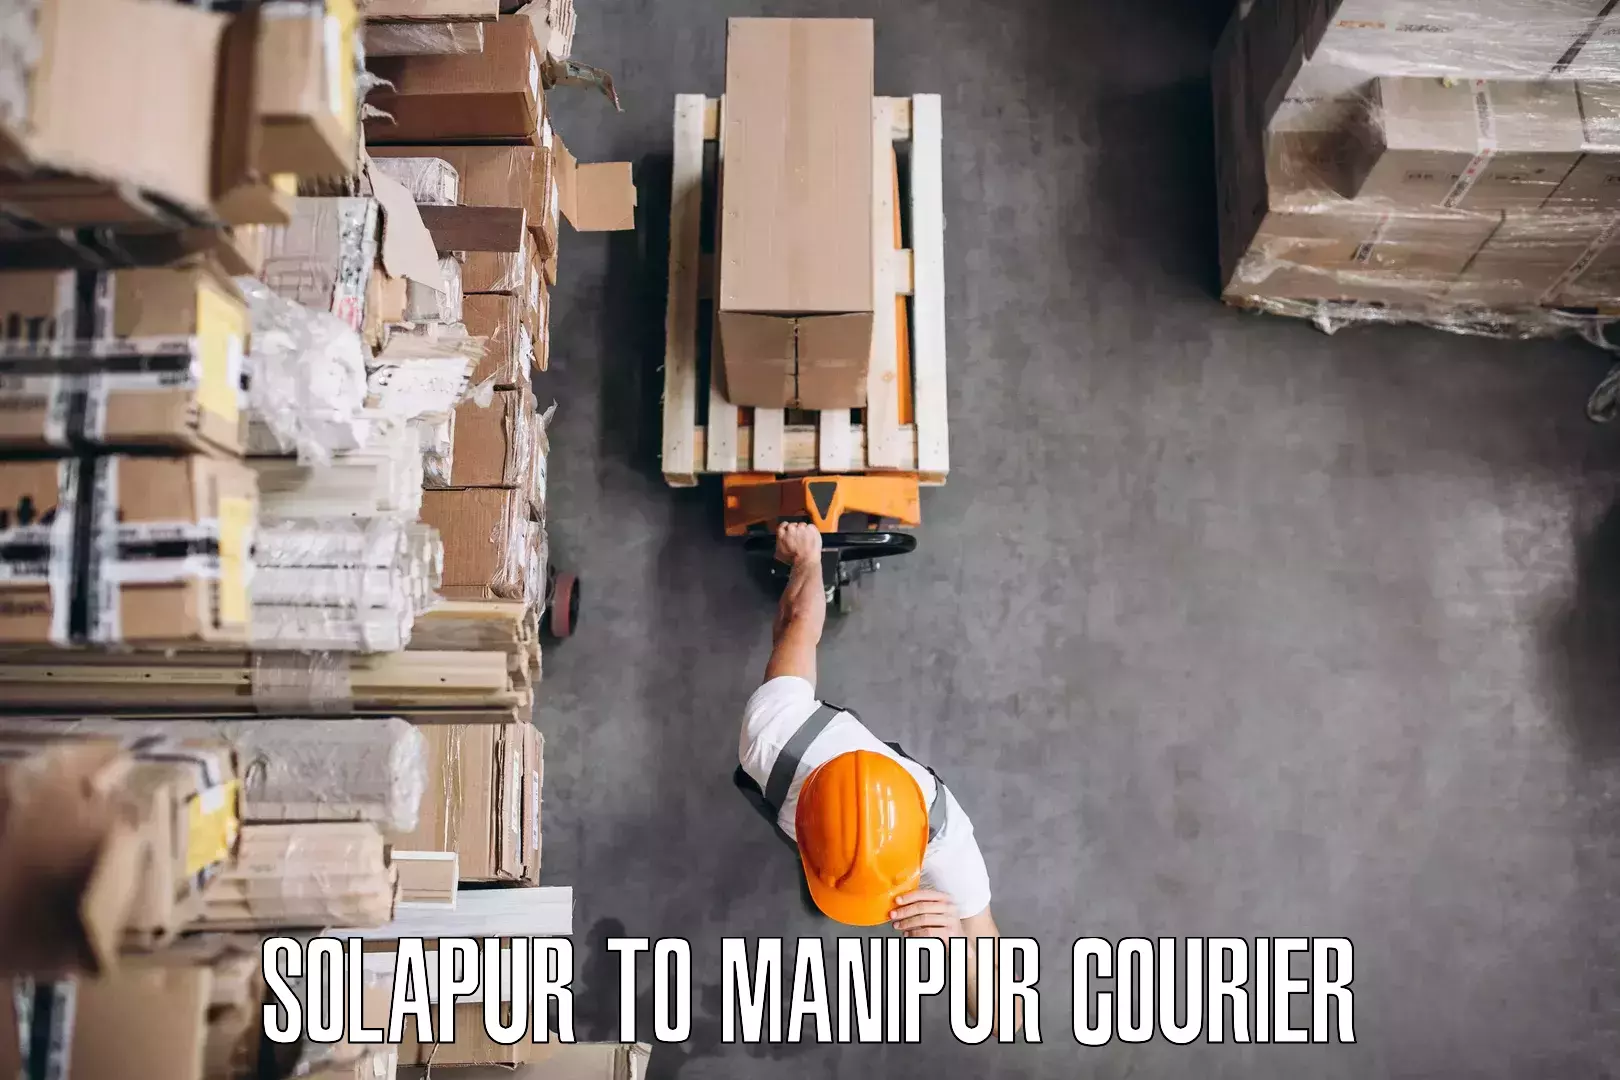 Furniture transport professionals Solapur to Senapati